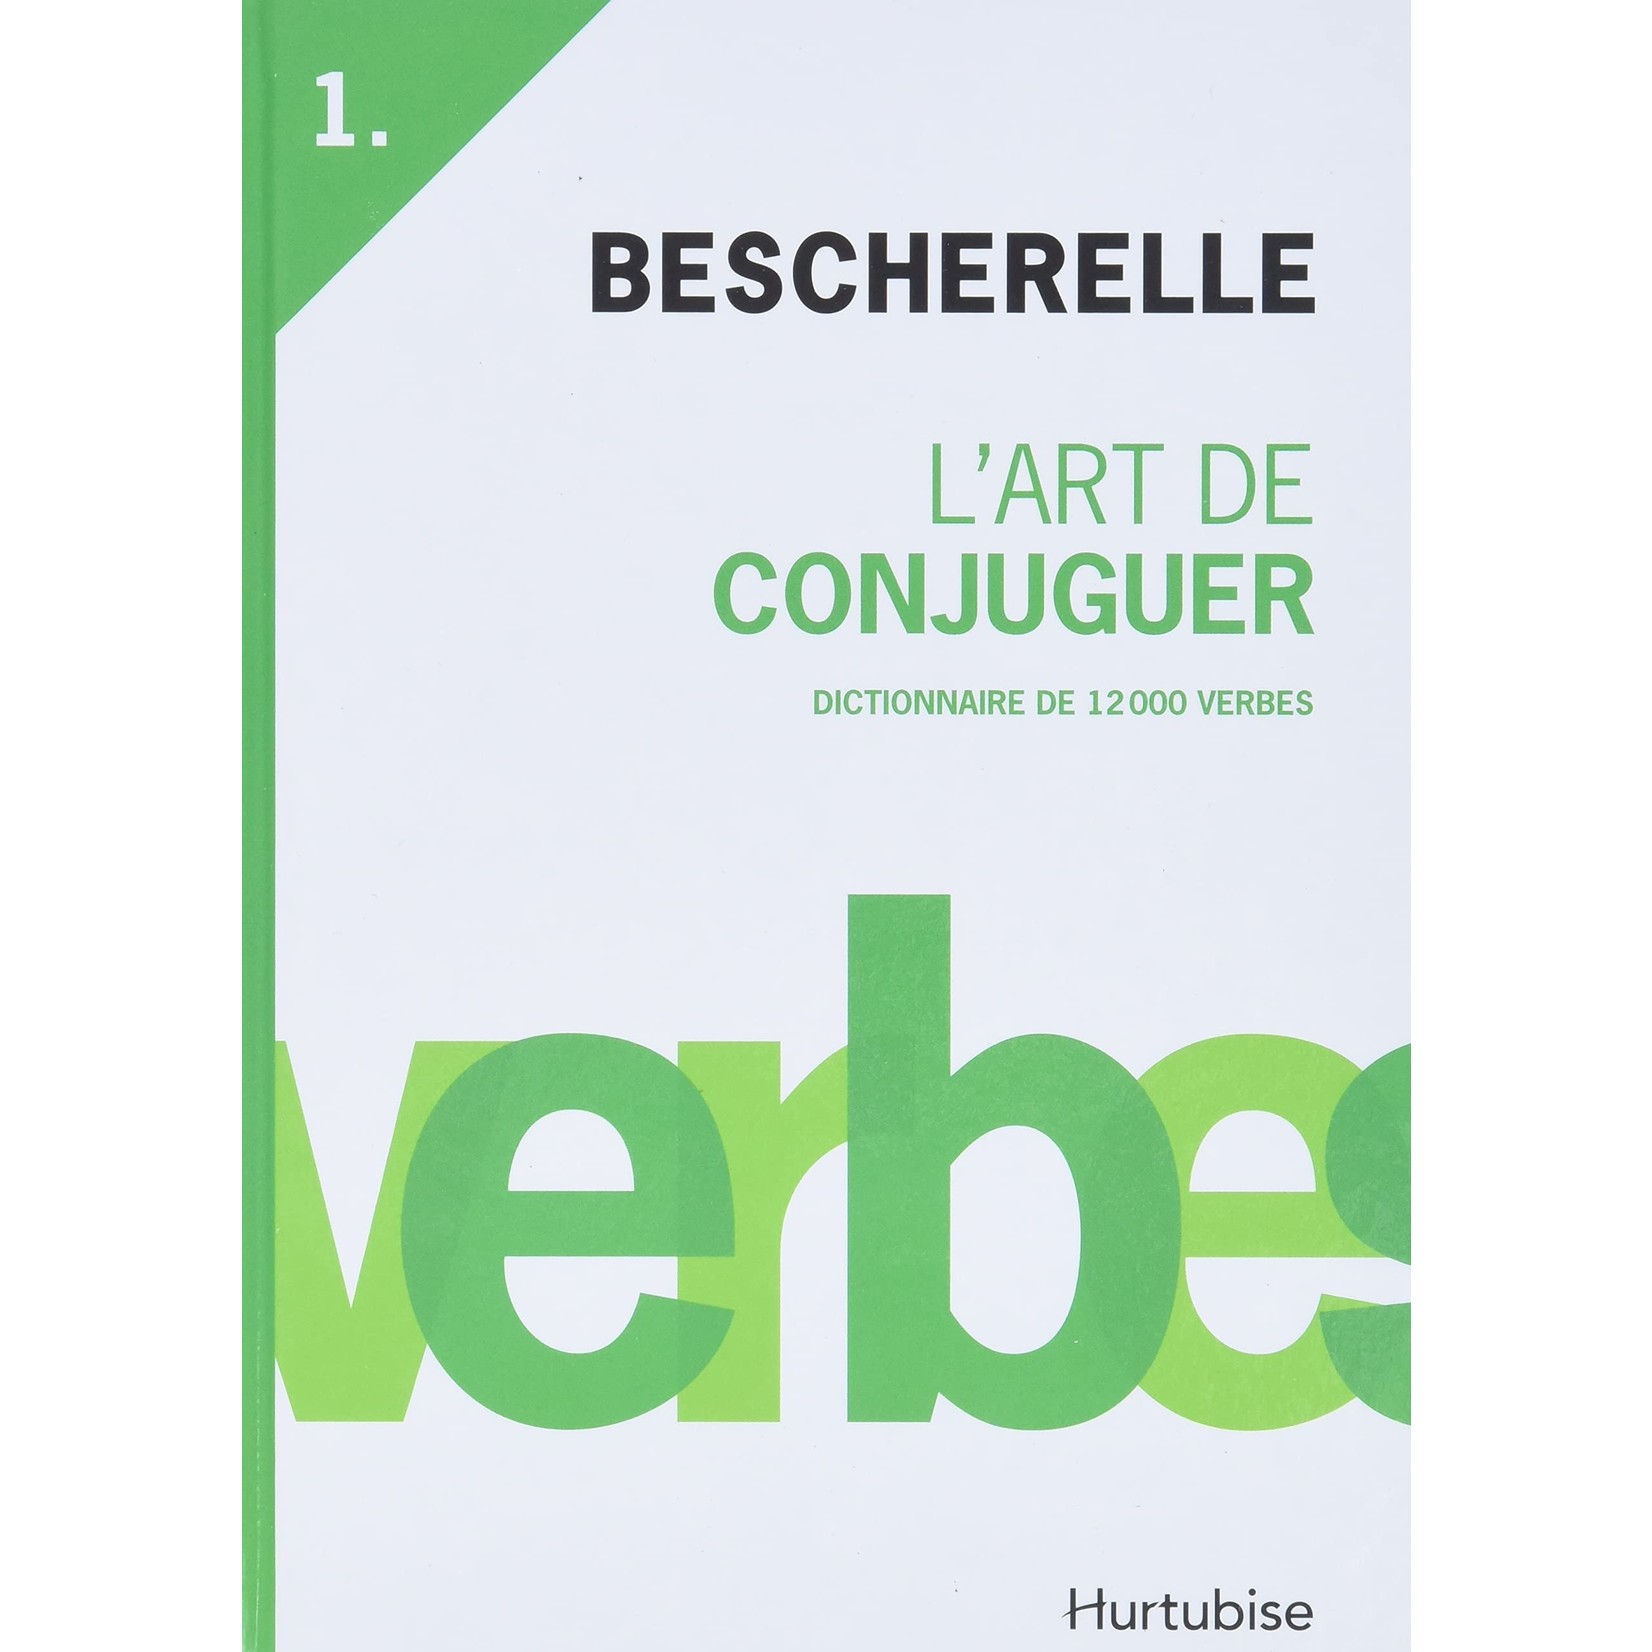 Bescherelle, L'art de conjuguer. Dictionnaire de 12,000 verbes.